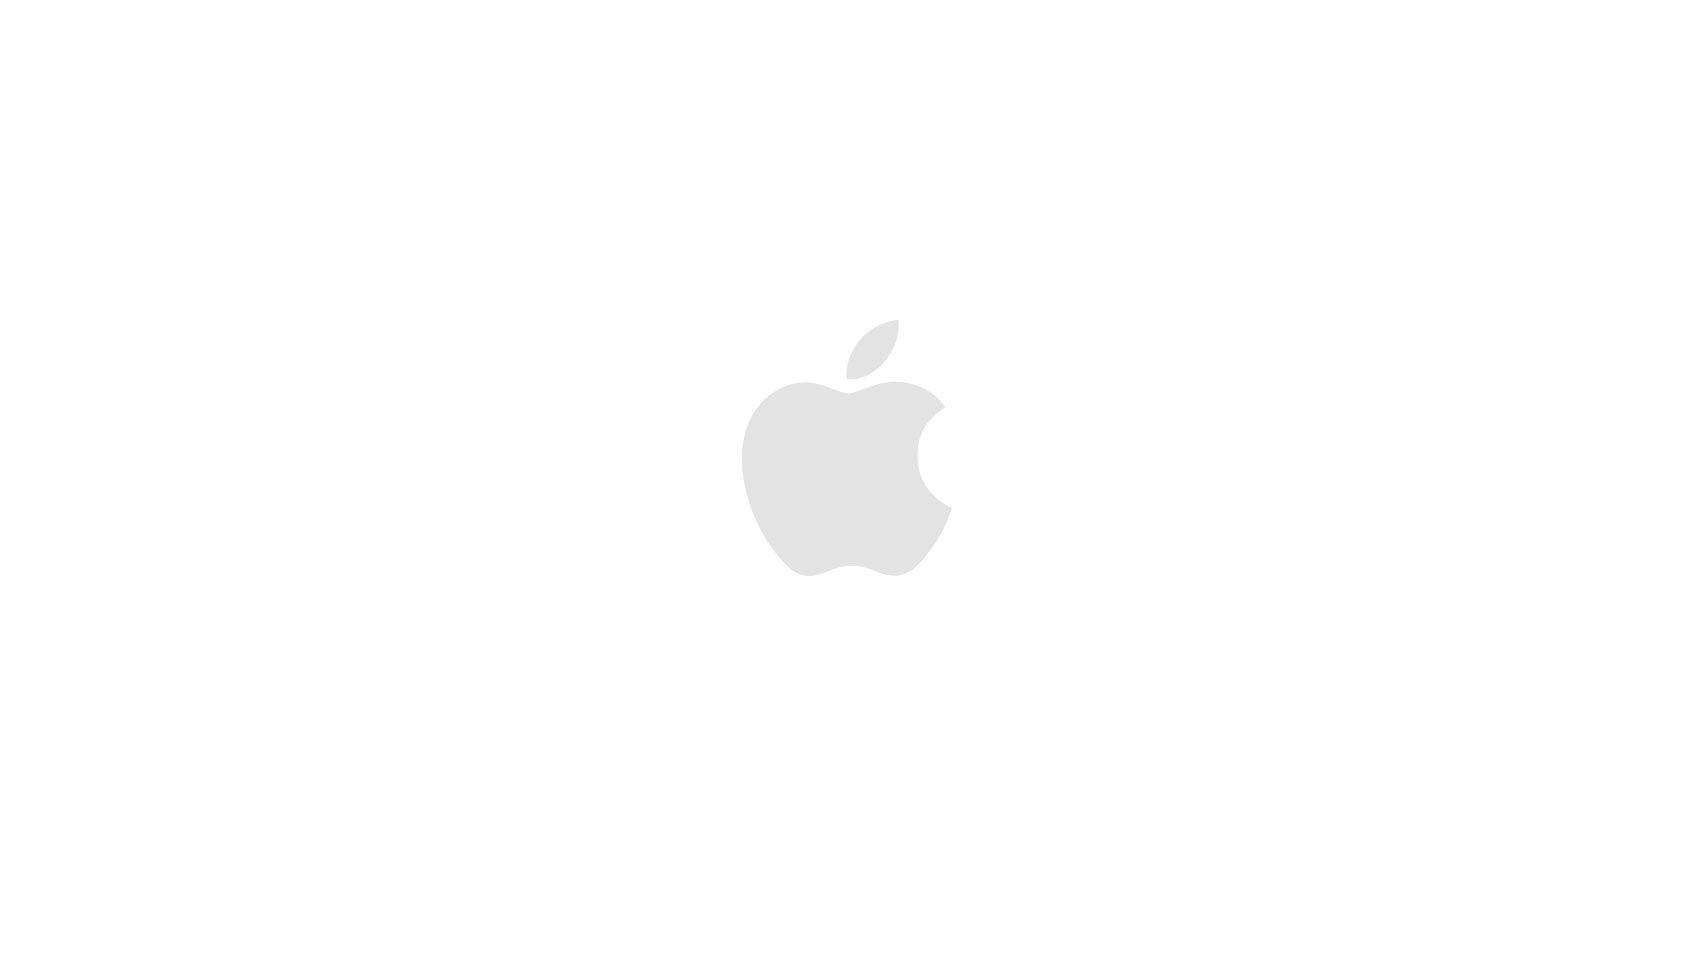 Apple iOS Logo - iPhone XR - Apple